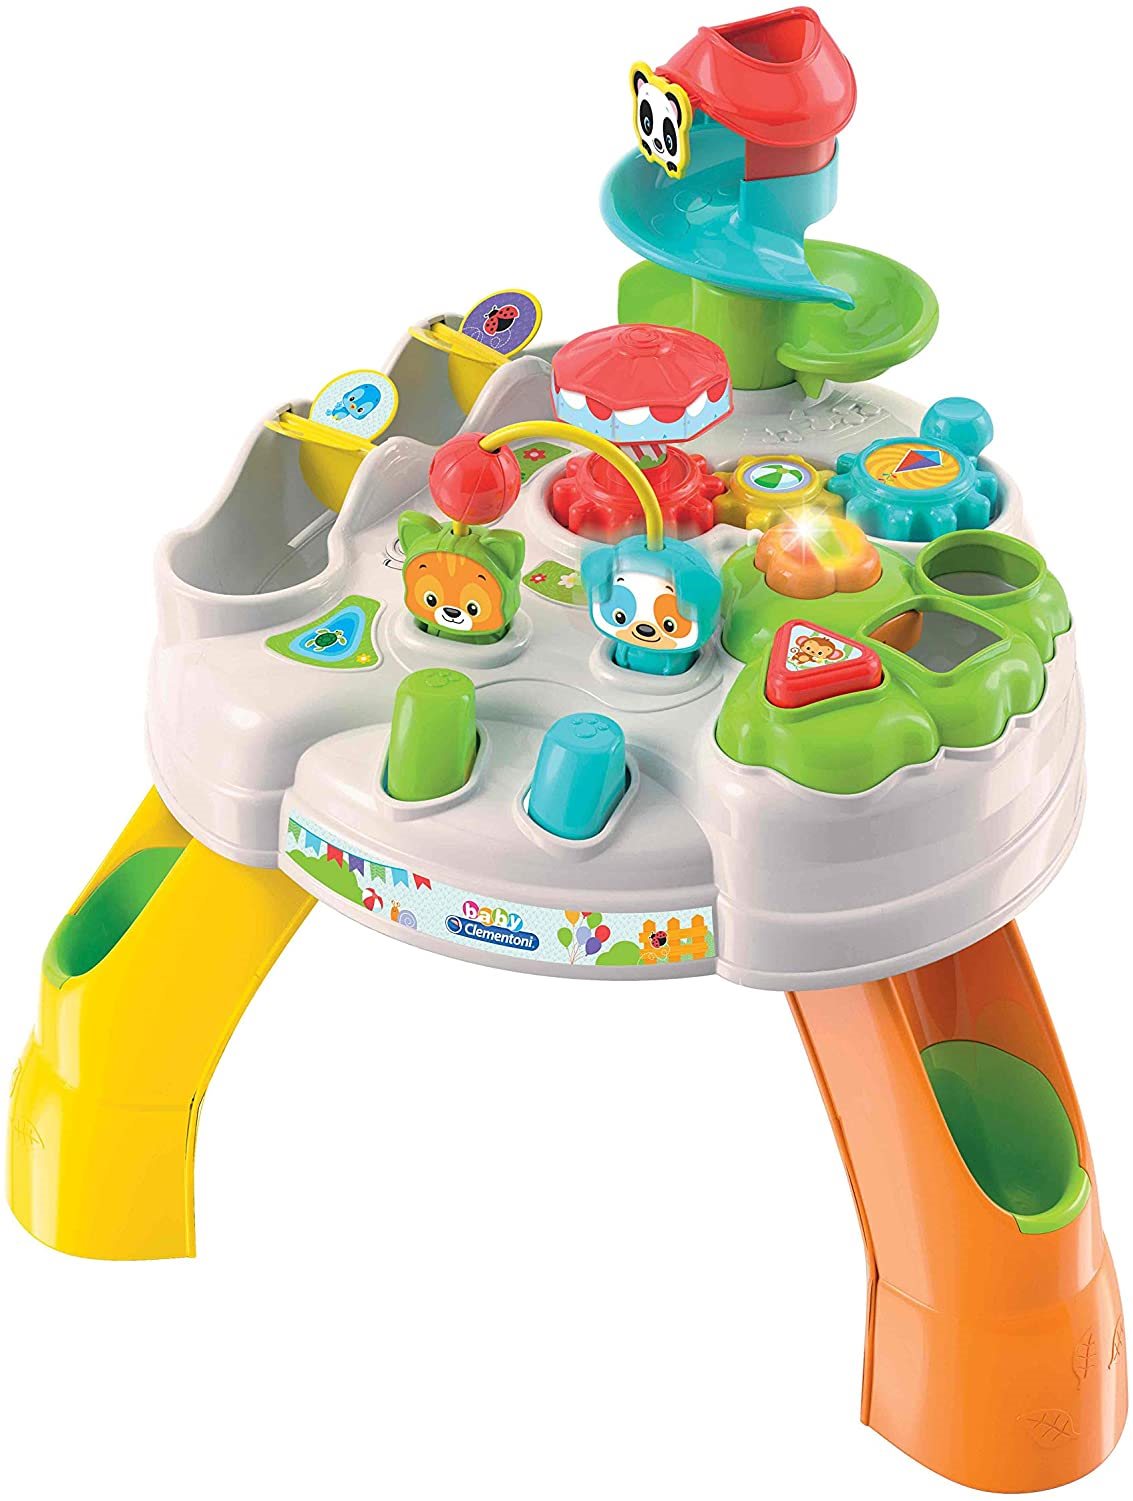 CLEMENTONI BABY Interaktivní hrací stolek Activity Park se světly a zvuky